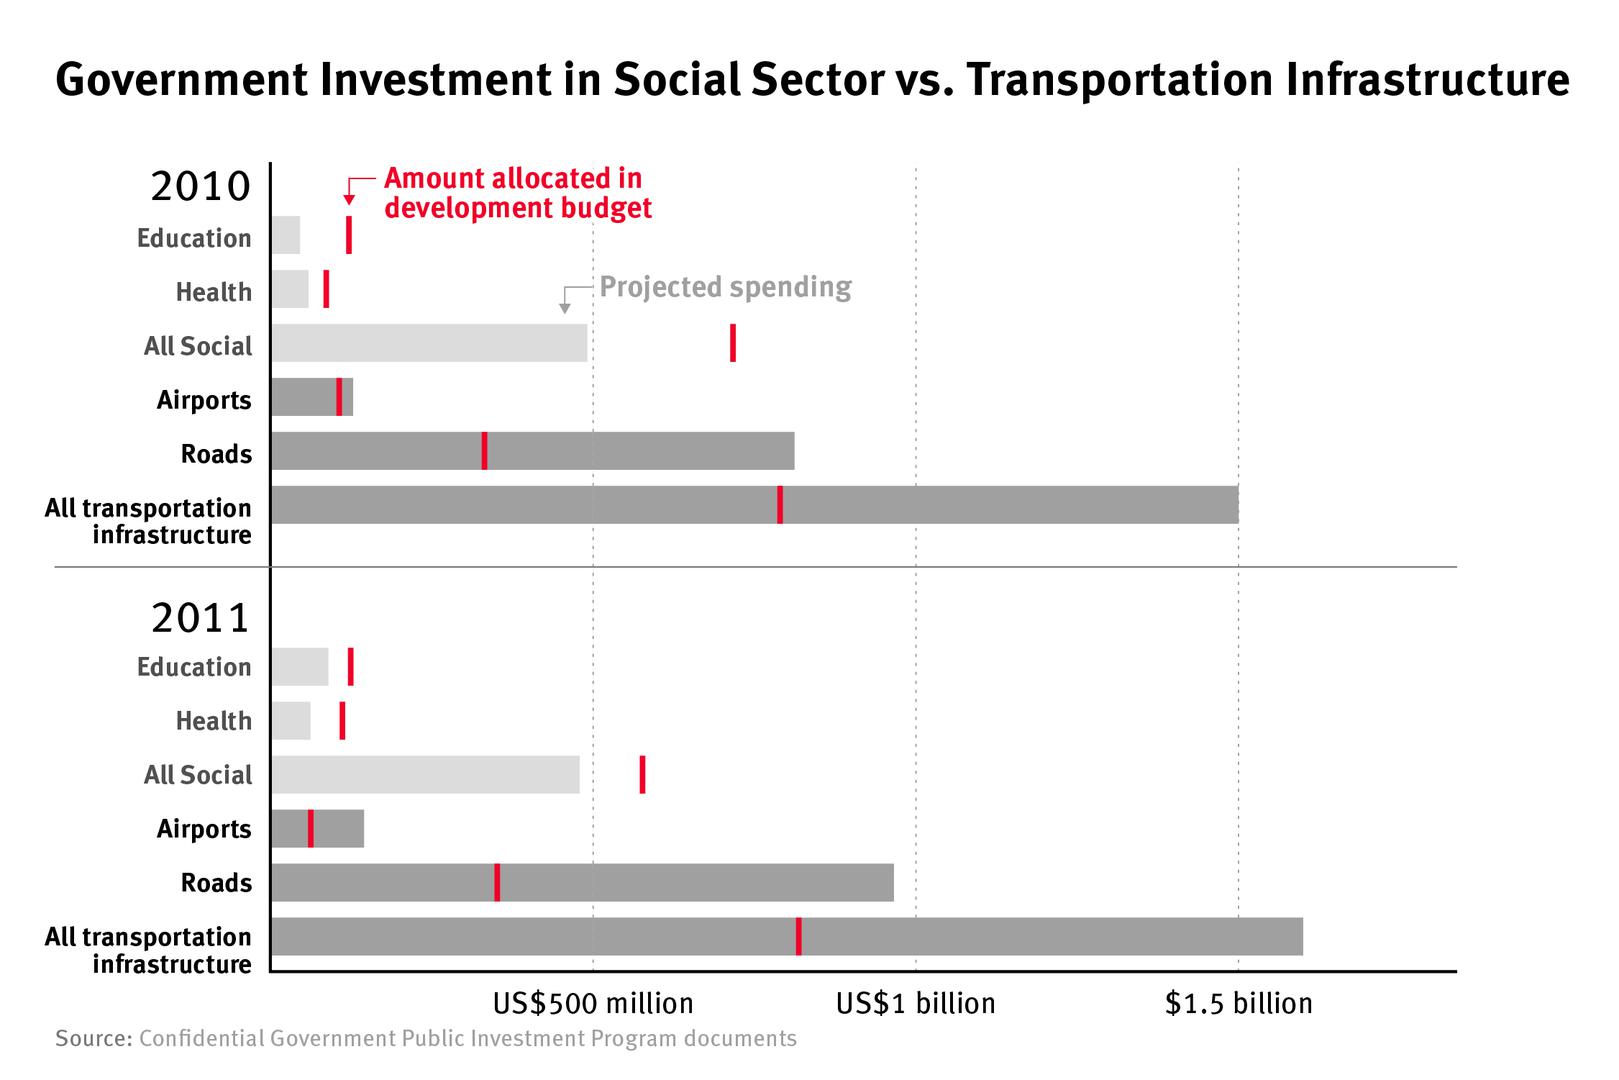 Investissements du gouvernement dans le secteur social, comparé aux investissements dans les infrastructures de transport.